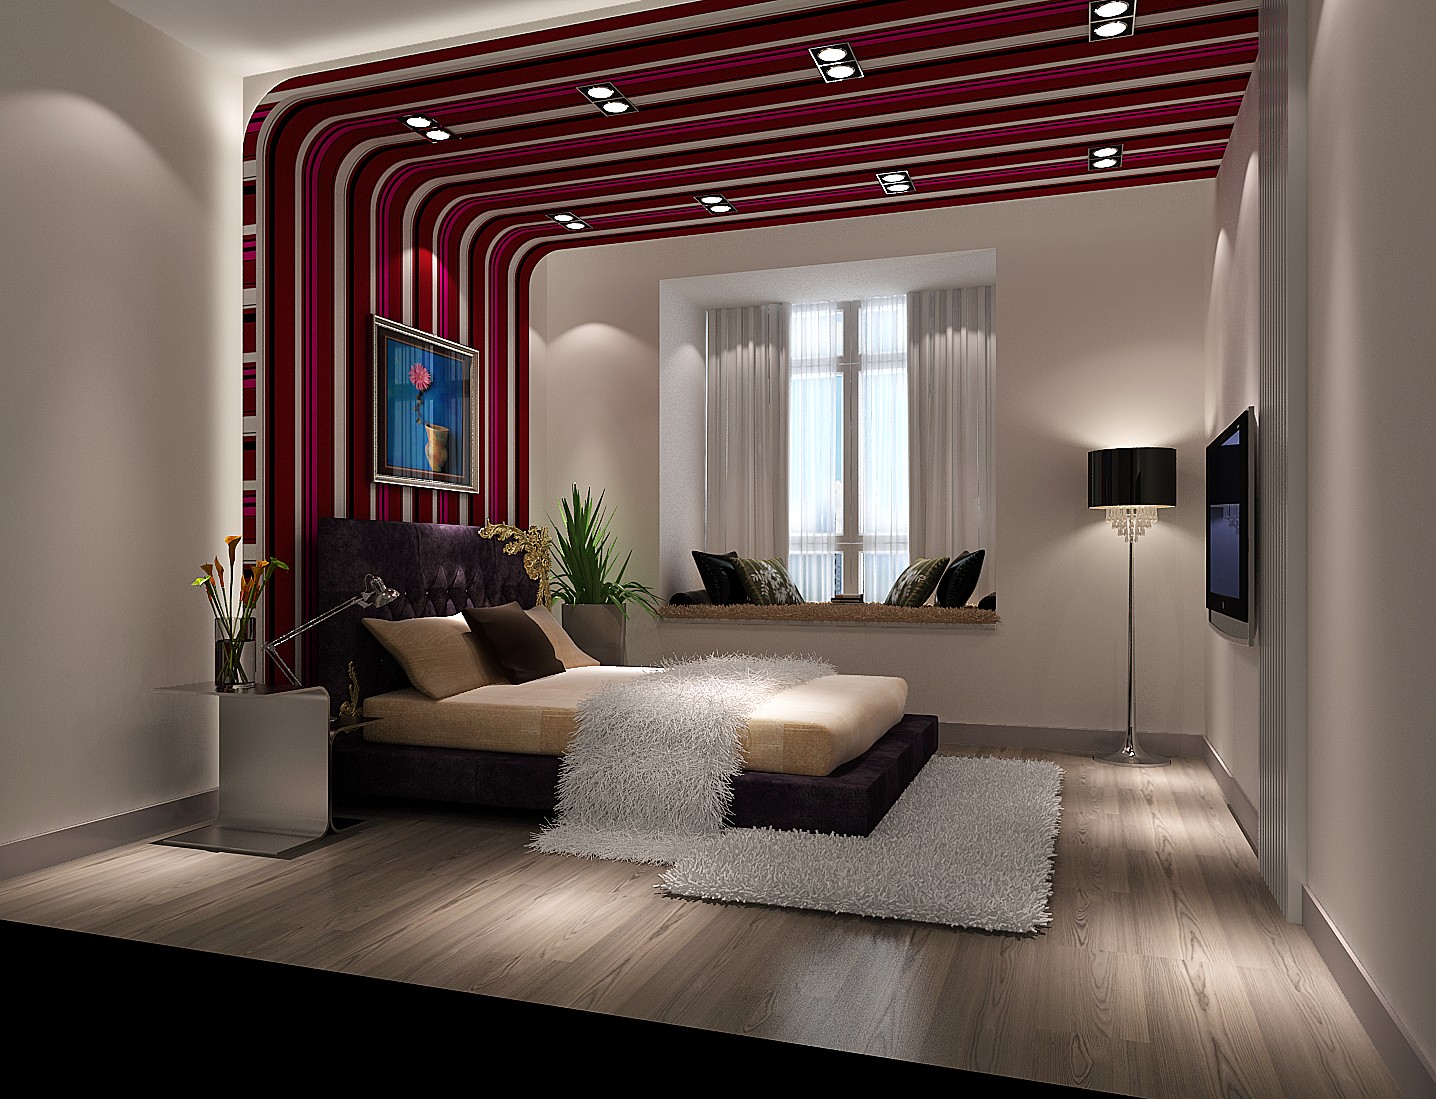 高度国际 中景江山赋 现代 公寓 卧室图片来自高度国际在高度国际-家居强调功能性设计的分享